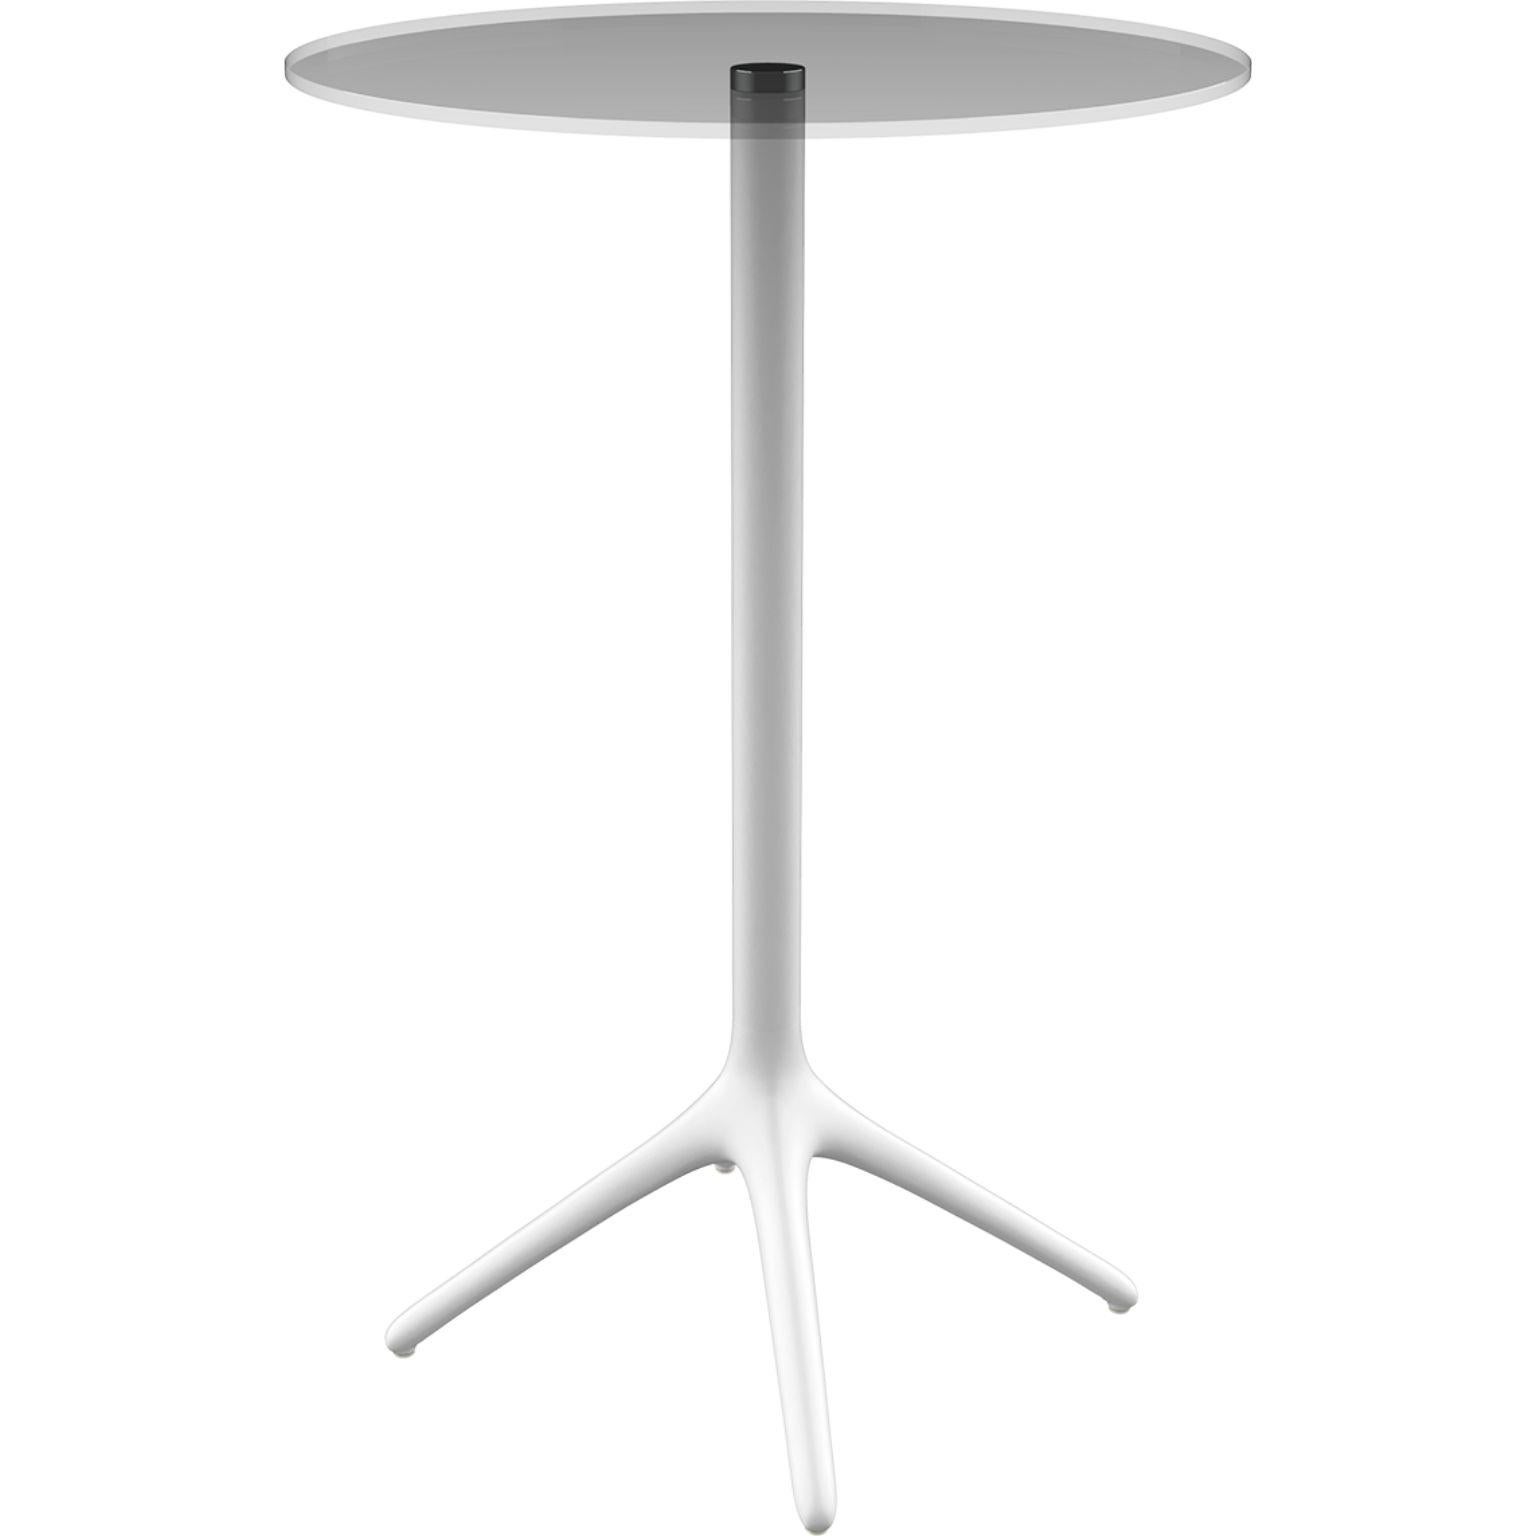 Table 105 blanche de Whiting par Mowee.
Dimensions : D45.5 x H105 cm.
Matériau : Aluminium, verre trempé.
Poids : 6,2 kg.
Disponible également en différentes couleurs et finitions. Version pliable disponible. 

Une table conçue pour être la